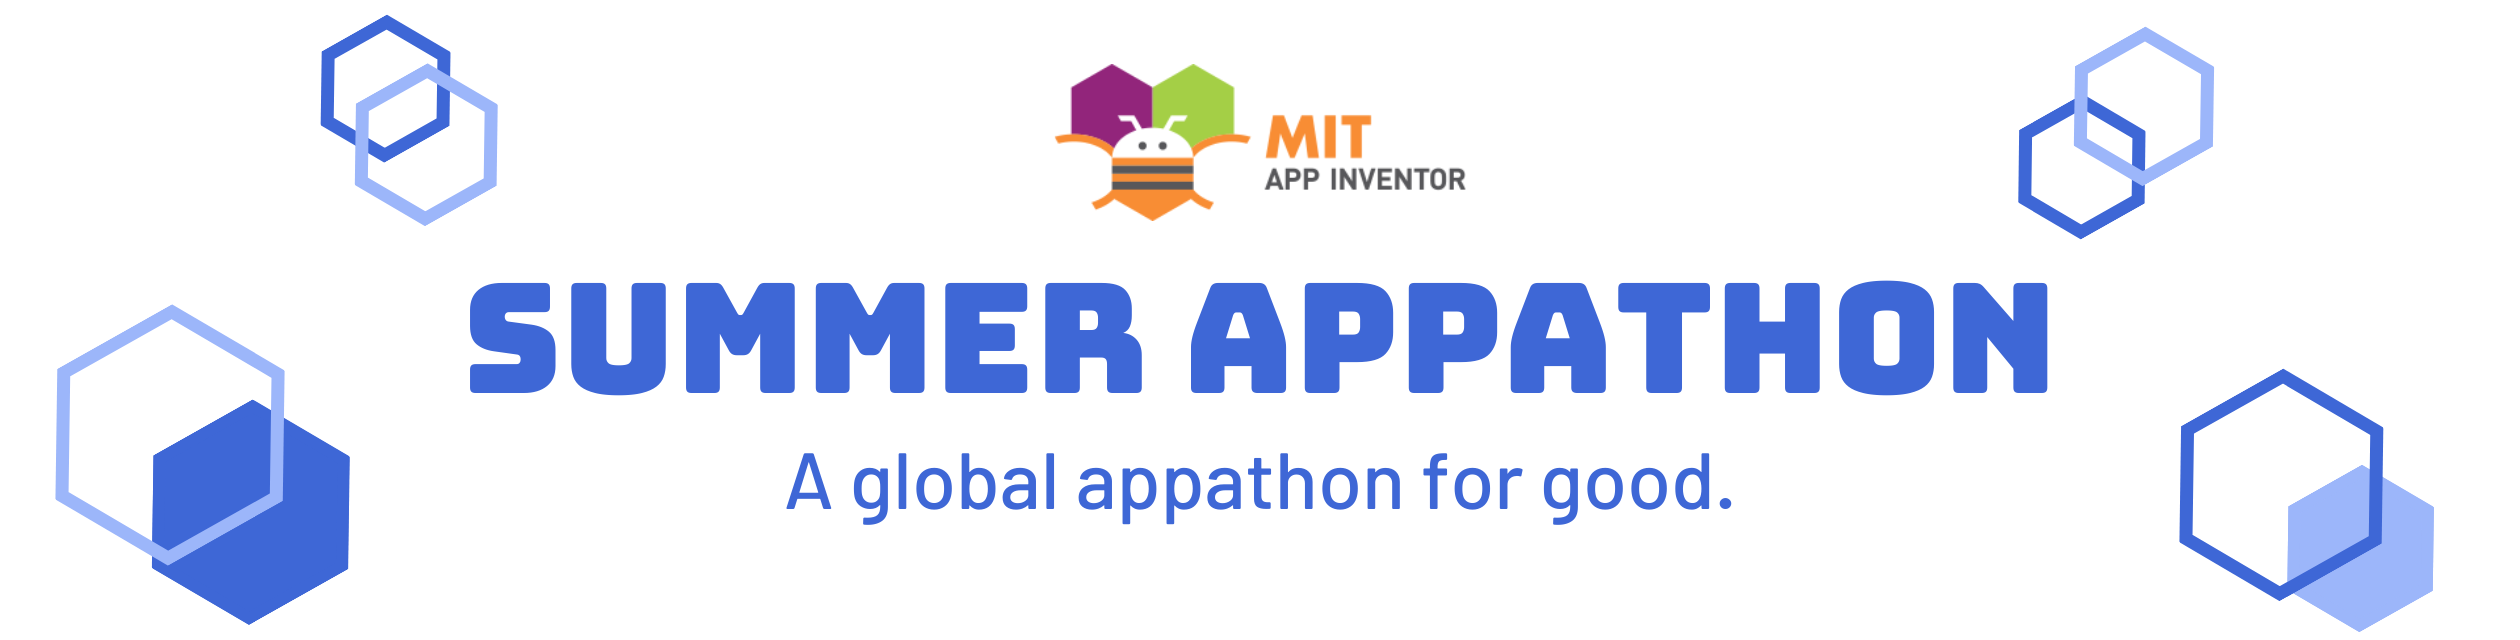 Saving highscore - MIT App Inventor Help - MIT App Inventor Community